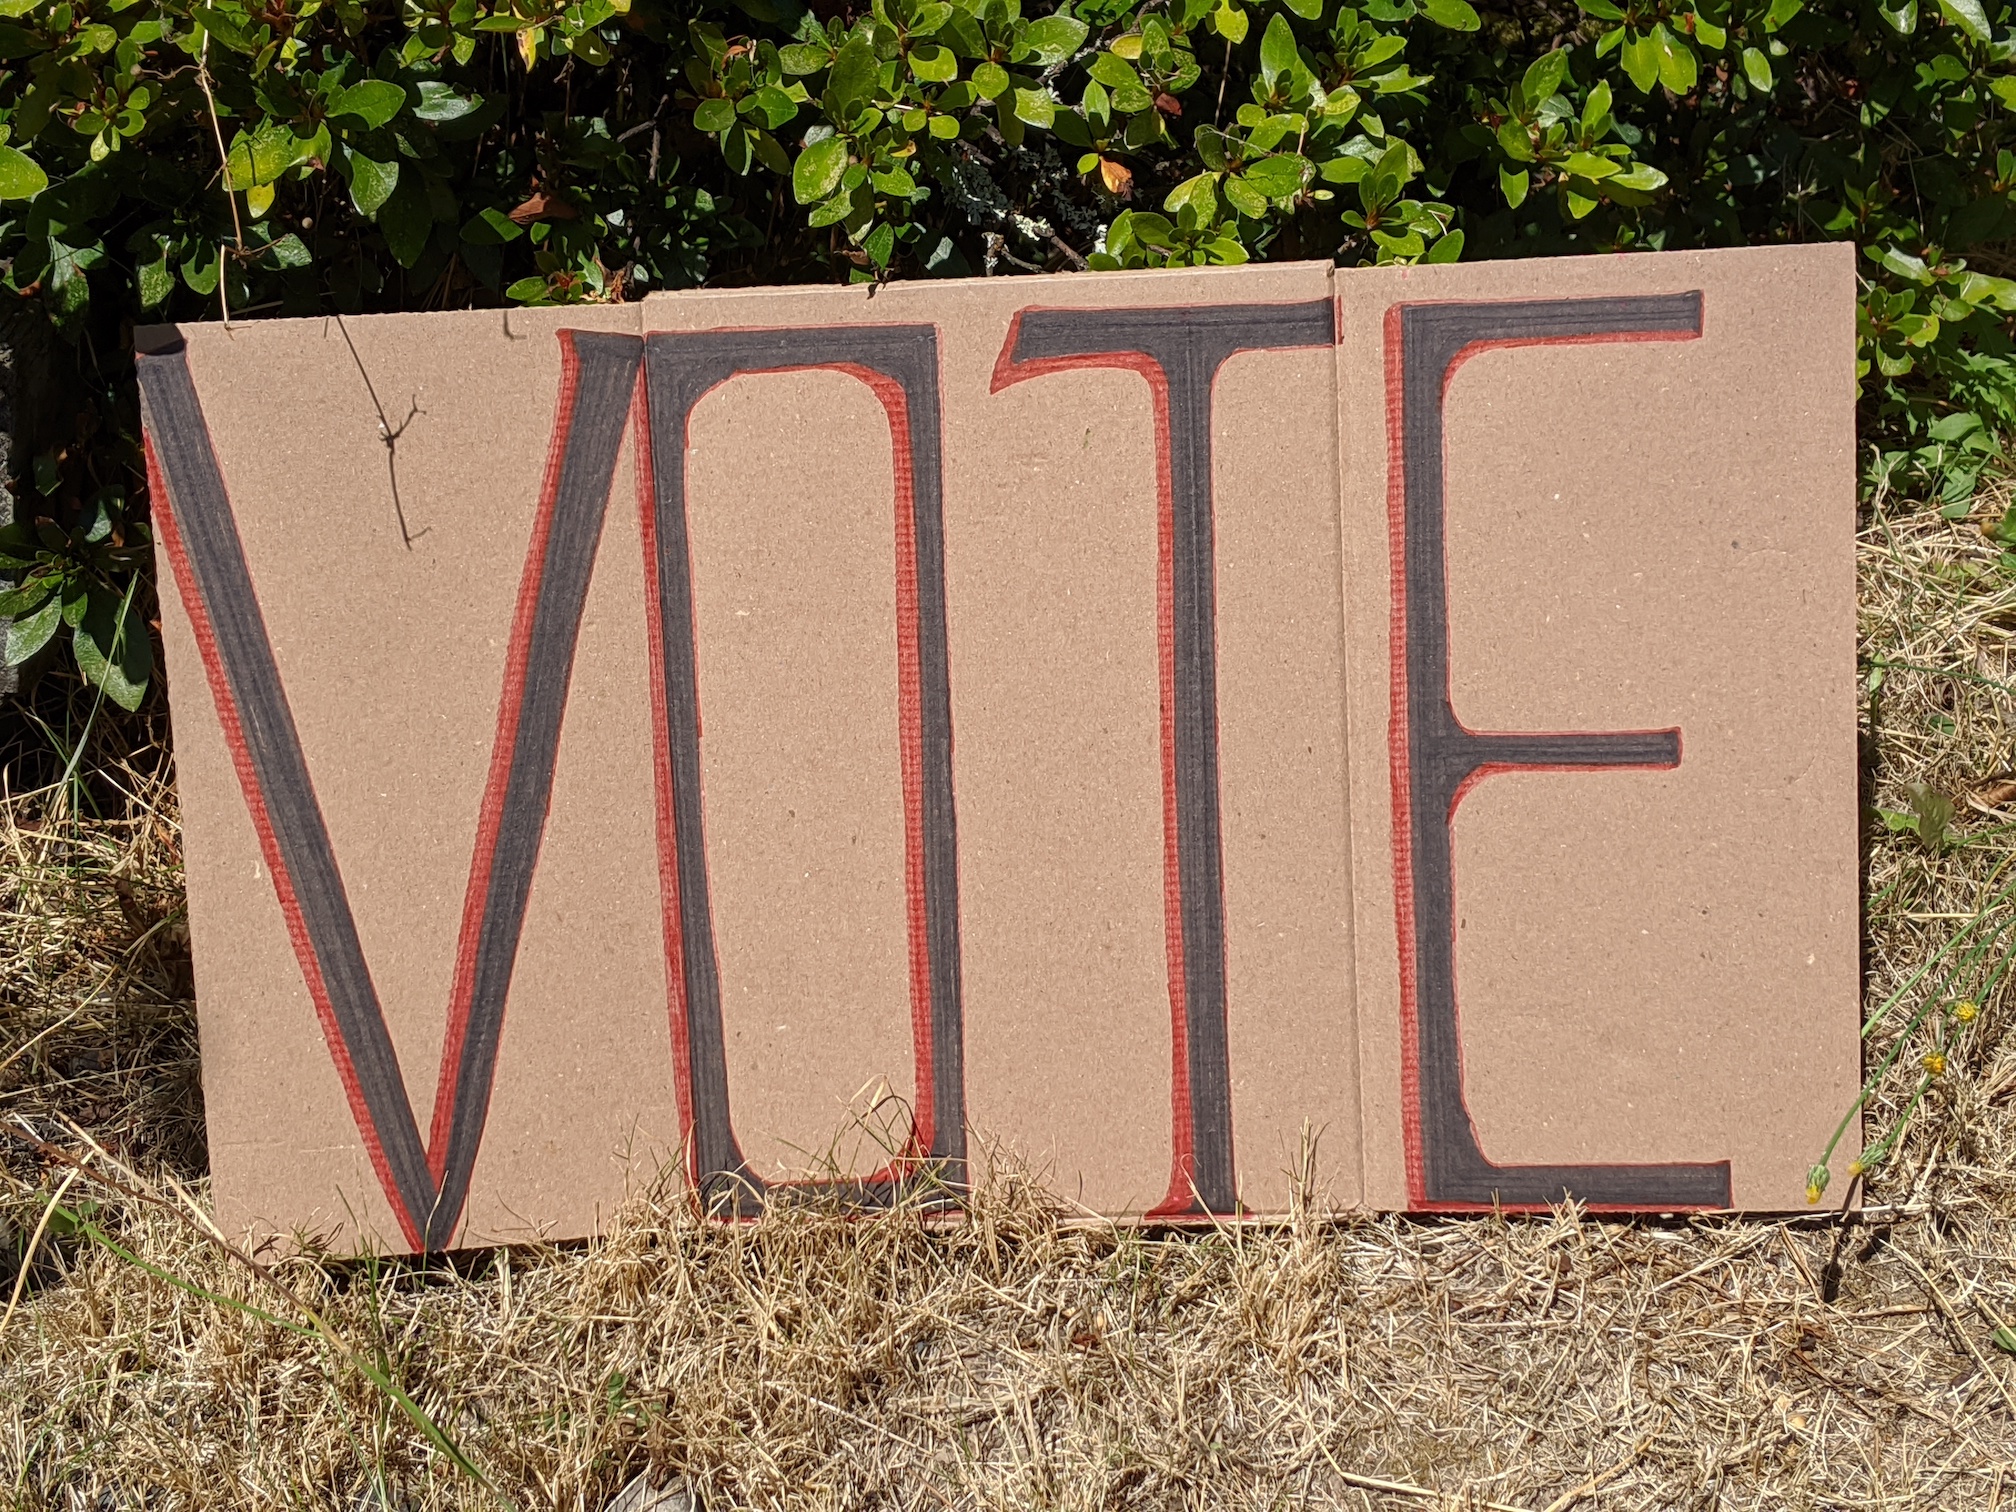 "VOTE" protest sign.